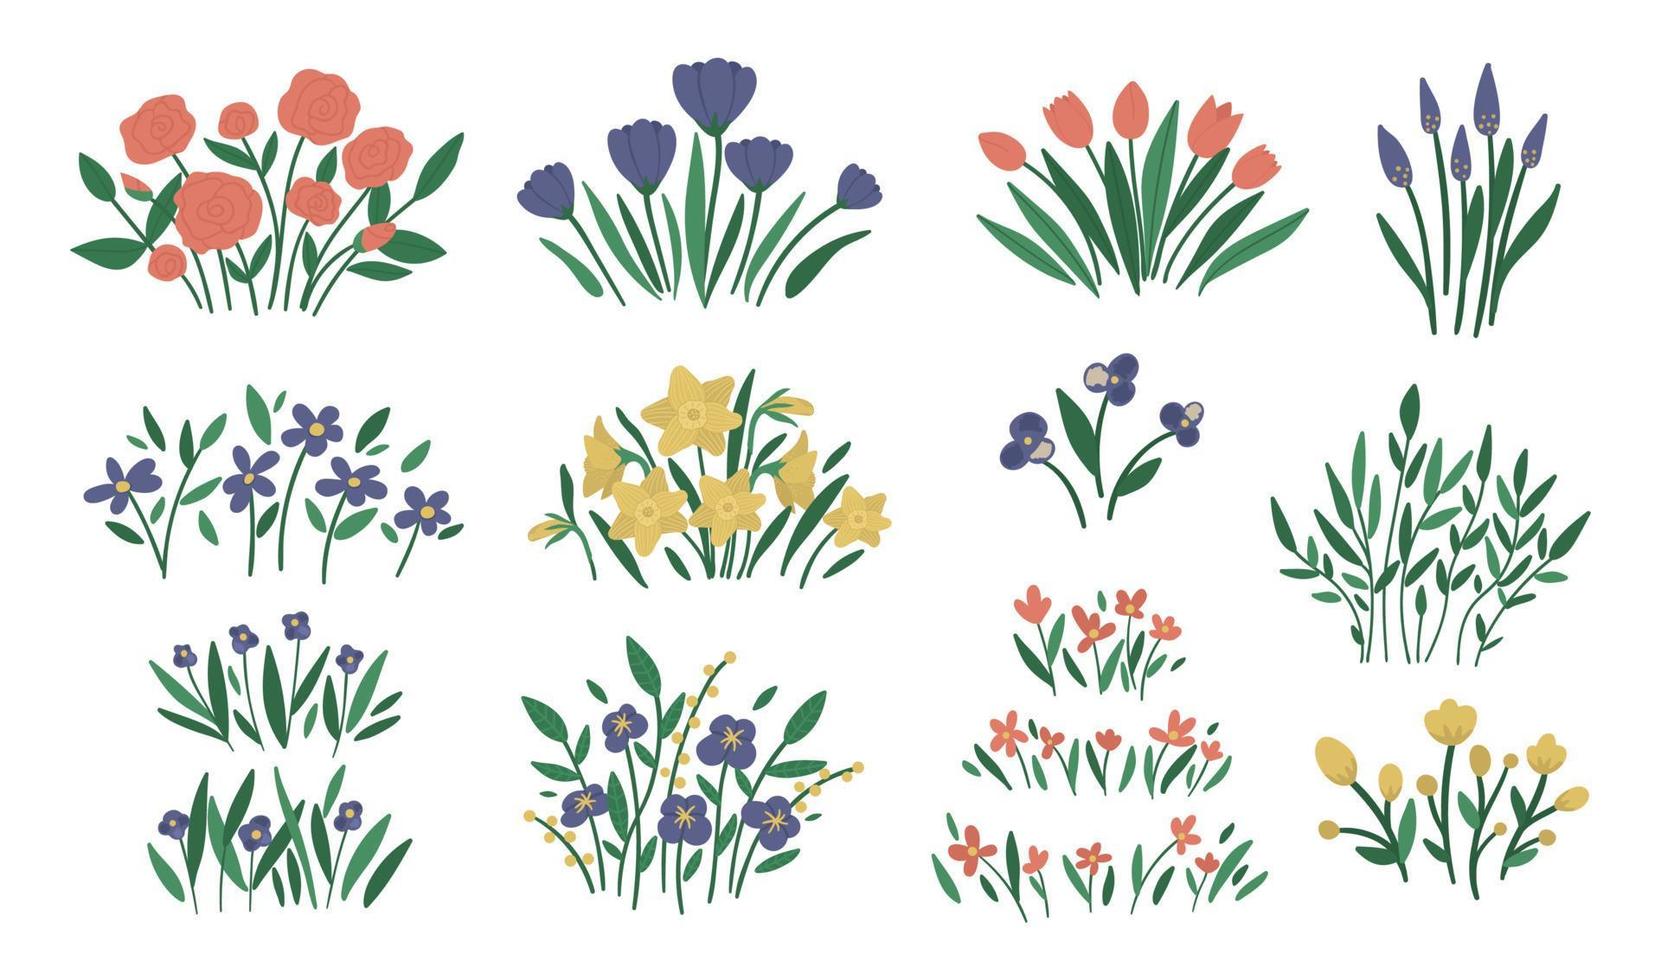 Vektor-Illustration von verschiedenen Blumenarrangements. dekorative Blumensträuße für den Garten. Sammlung schöner Frühlings- und Sommerkräuter und -blumen. vektor